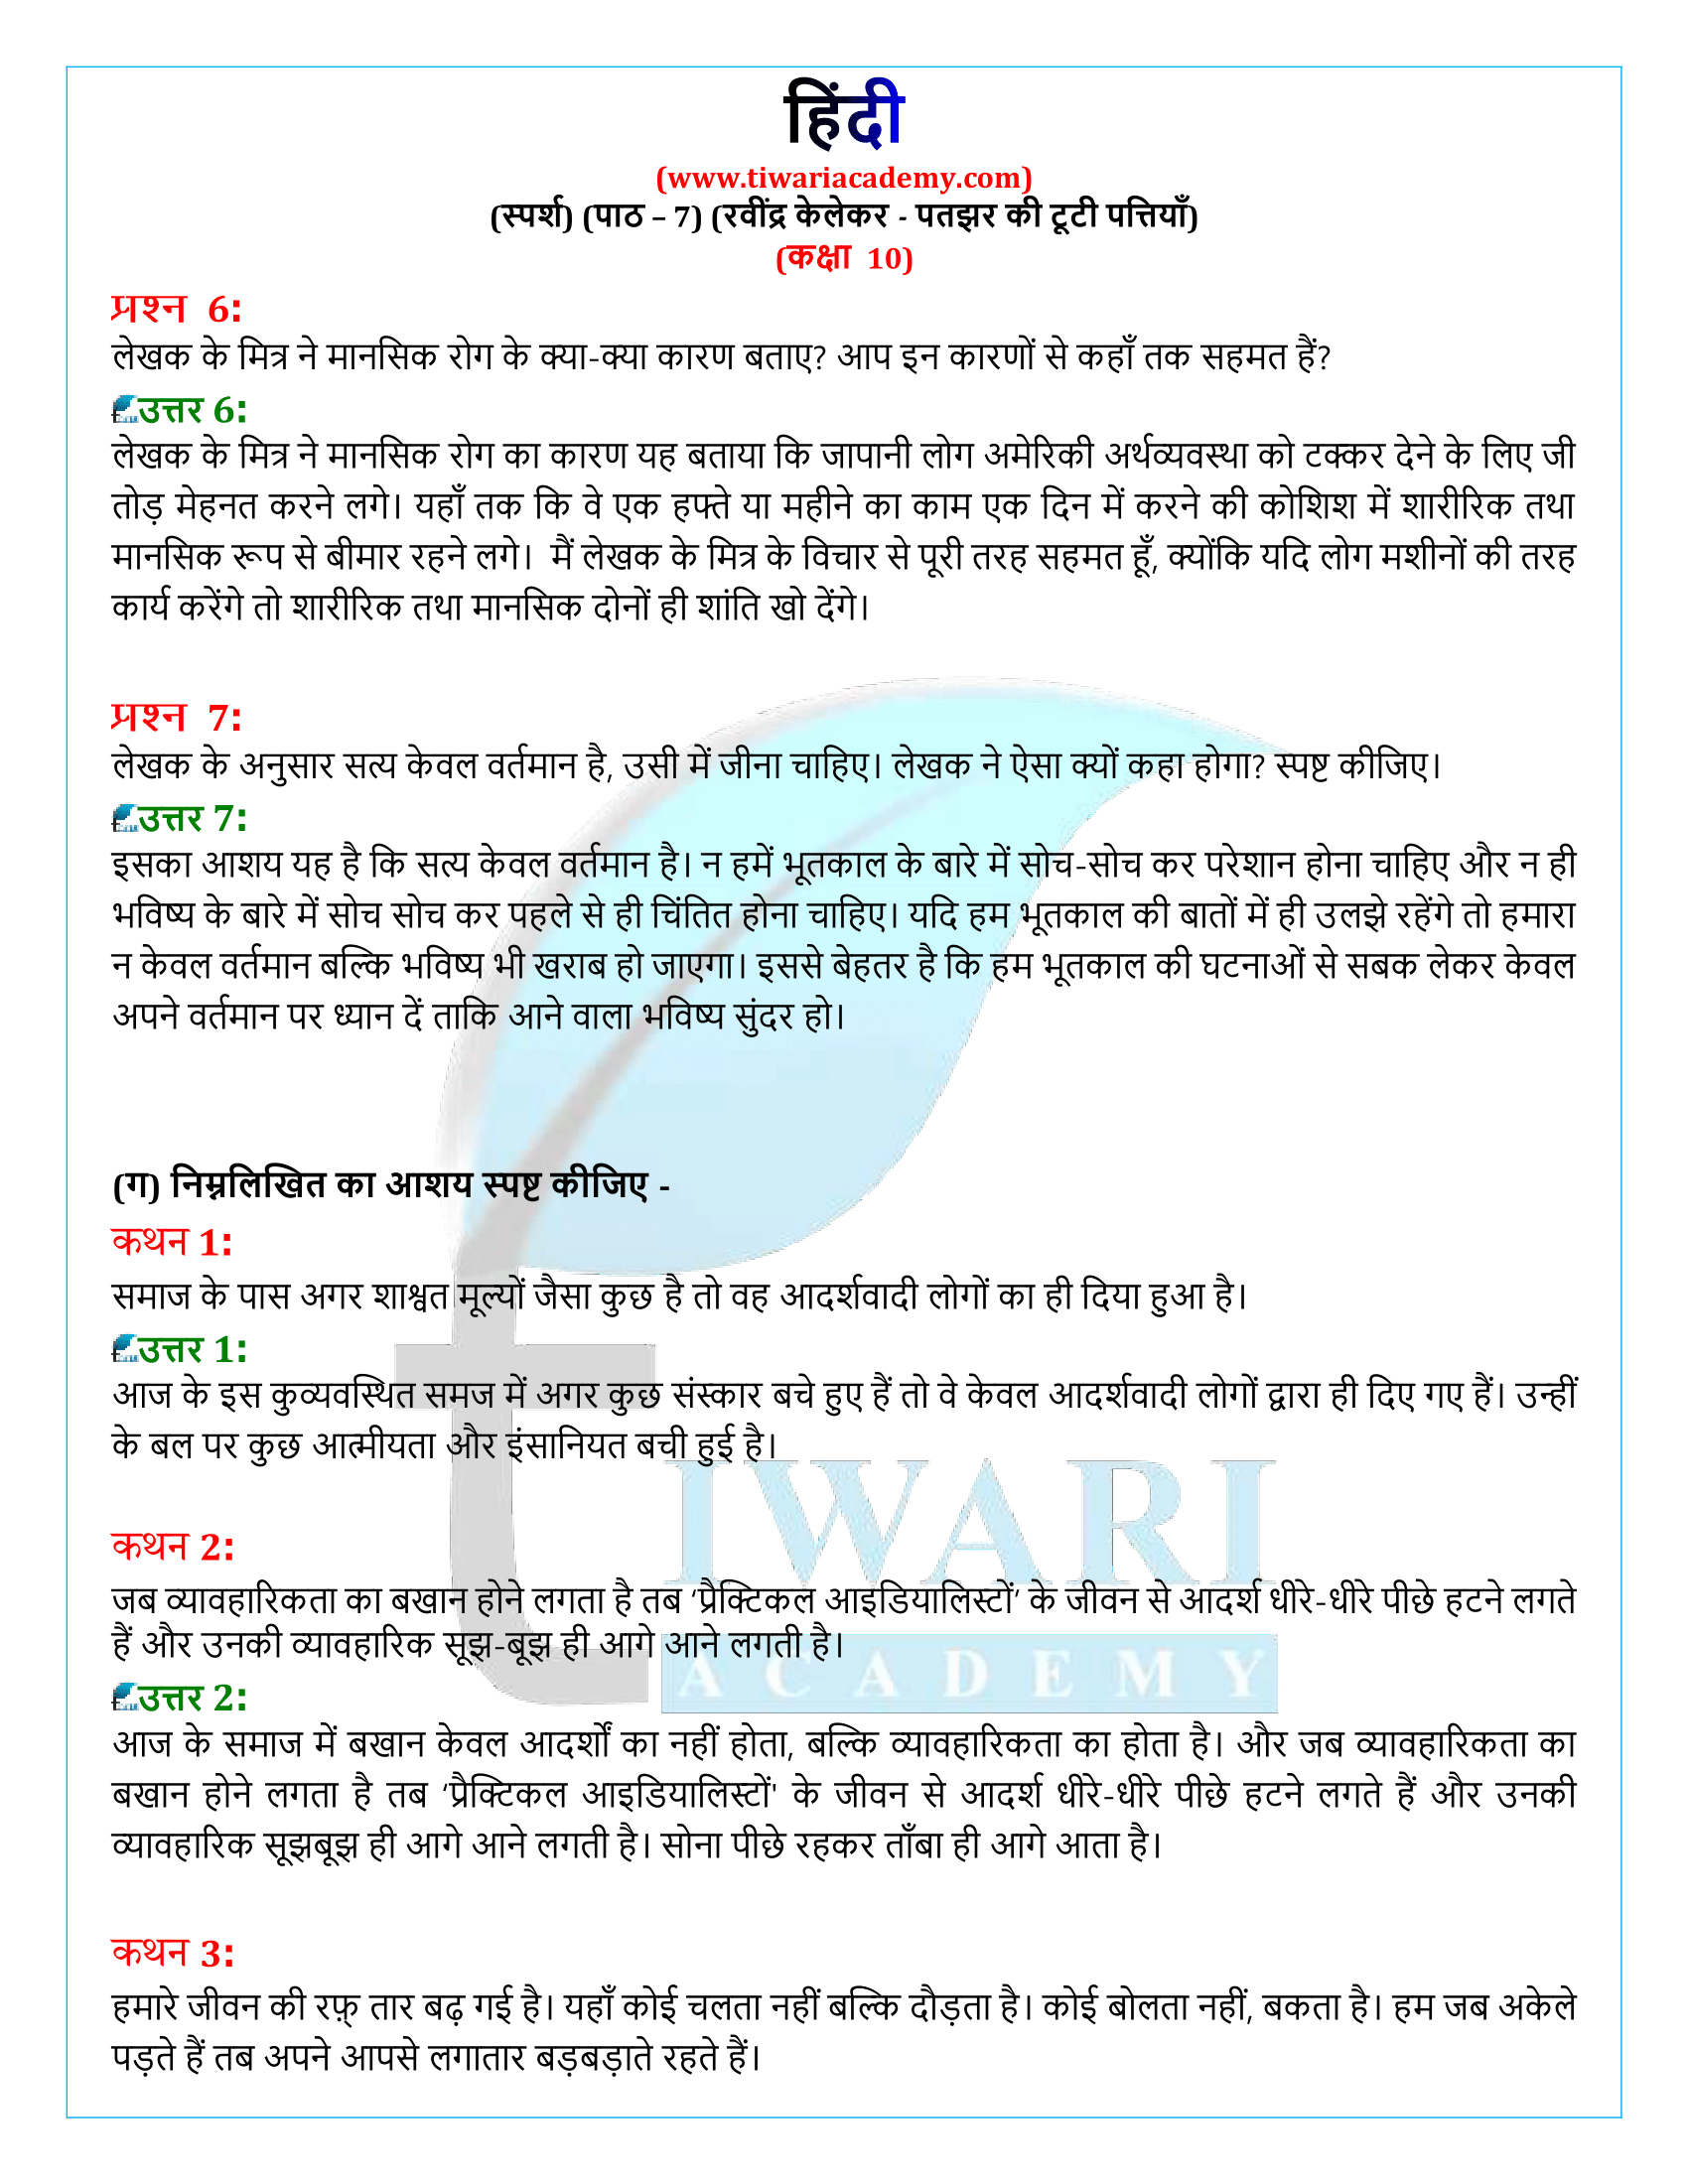 कक्षा 10 हिंदी स्पर्श गद्य अध्याय 7 पुस्तिका